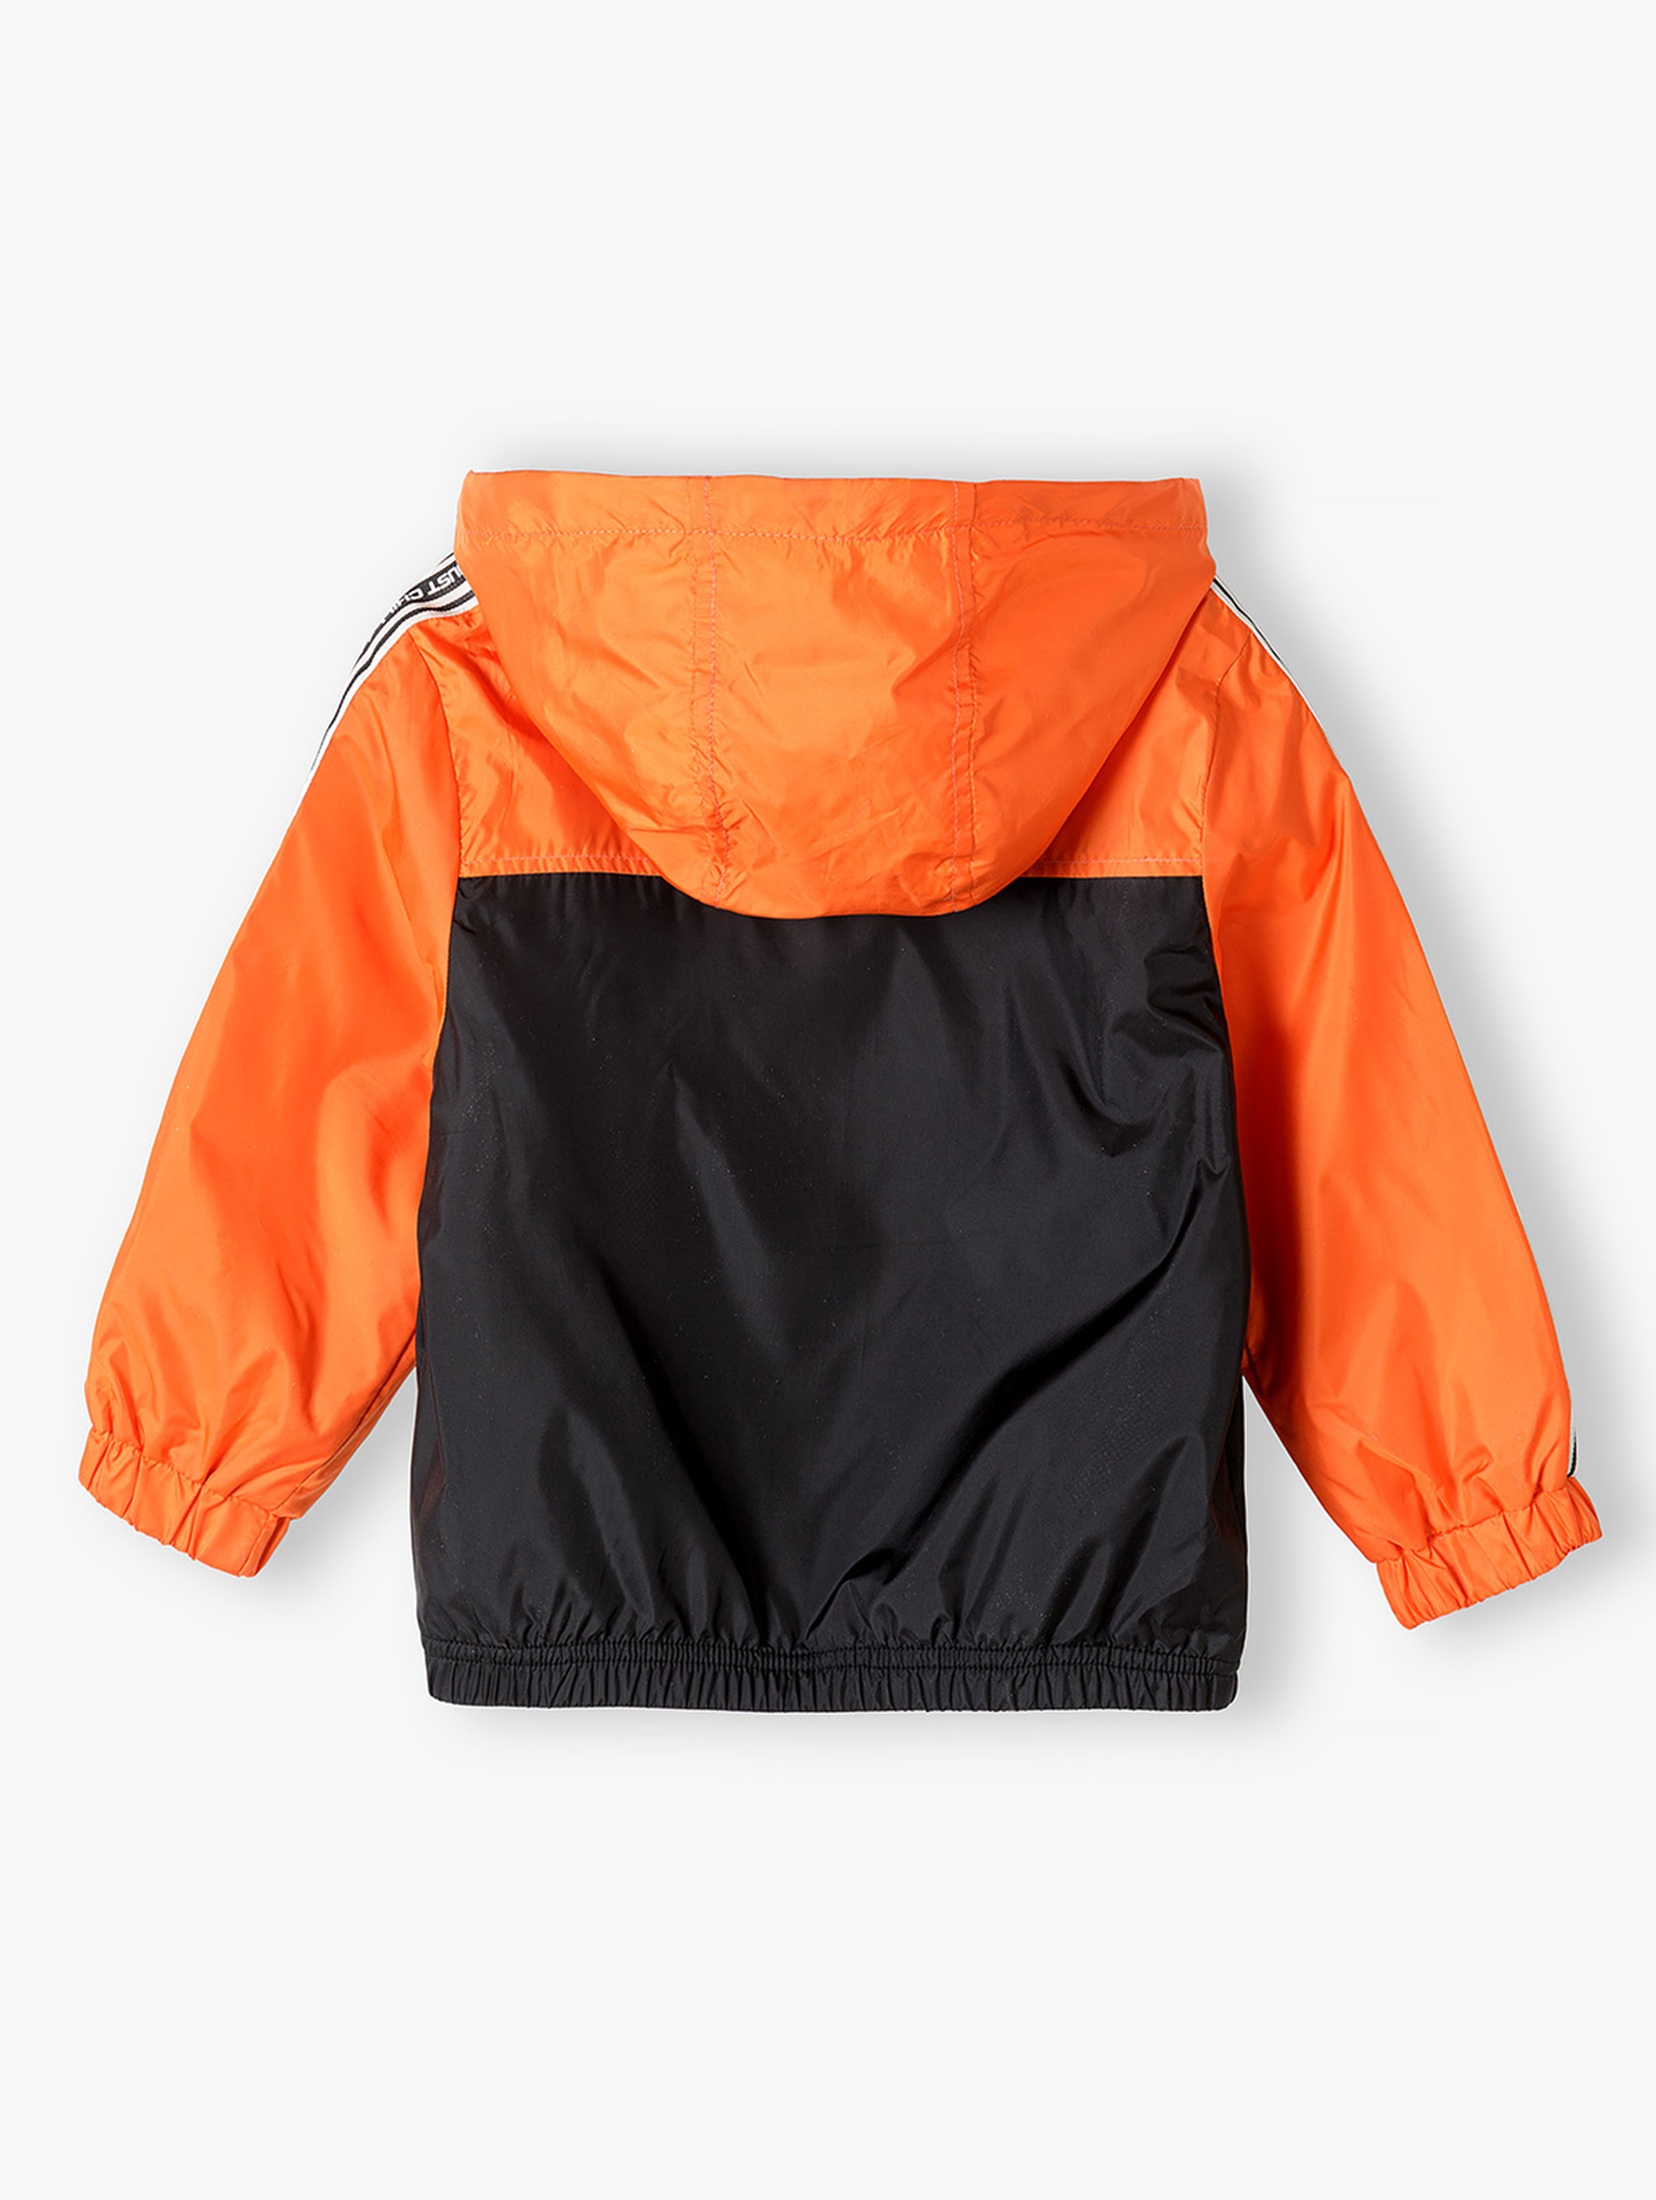 Pomarańczowa kurtka typu wiatrówka dla niemowlaka z kapturem